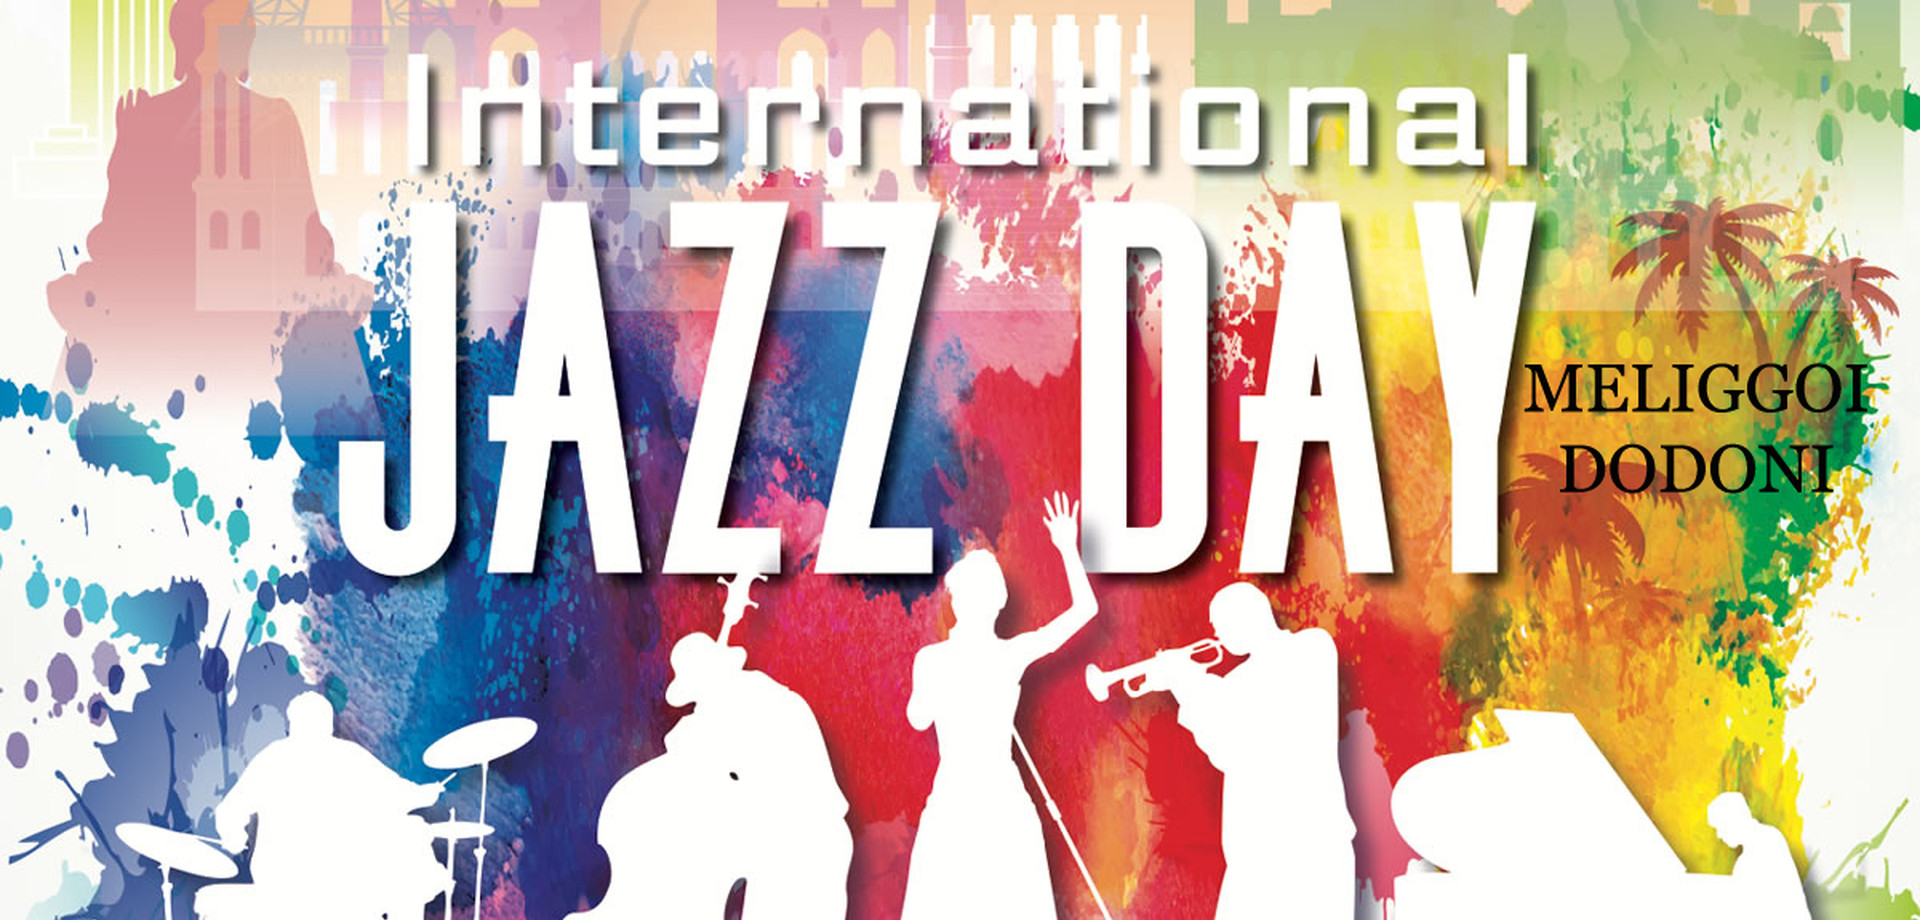 «Η γιορτή της Παγκόσμιας Ημέρας Τζαζ στους Μελιγγούς Δωδώνης» στην Πινακοθήκη Μελιγγών